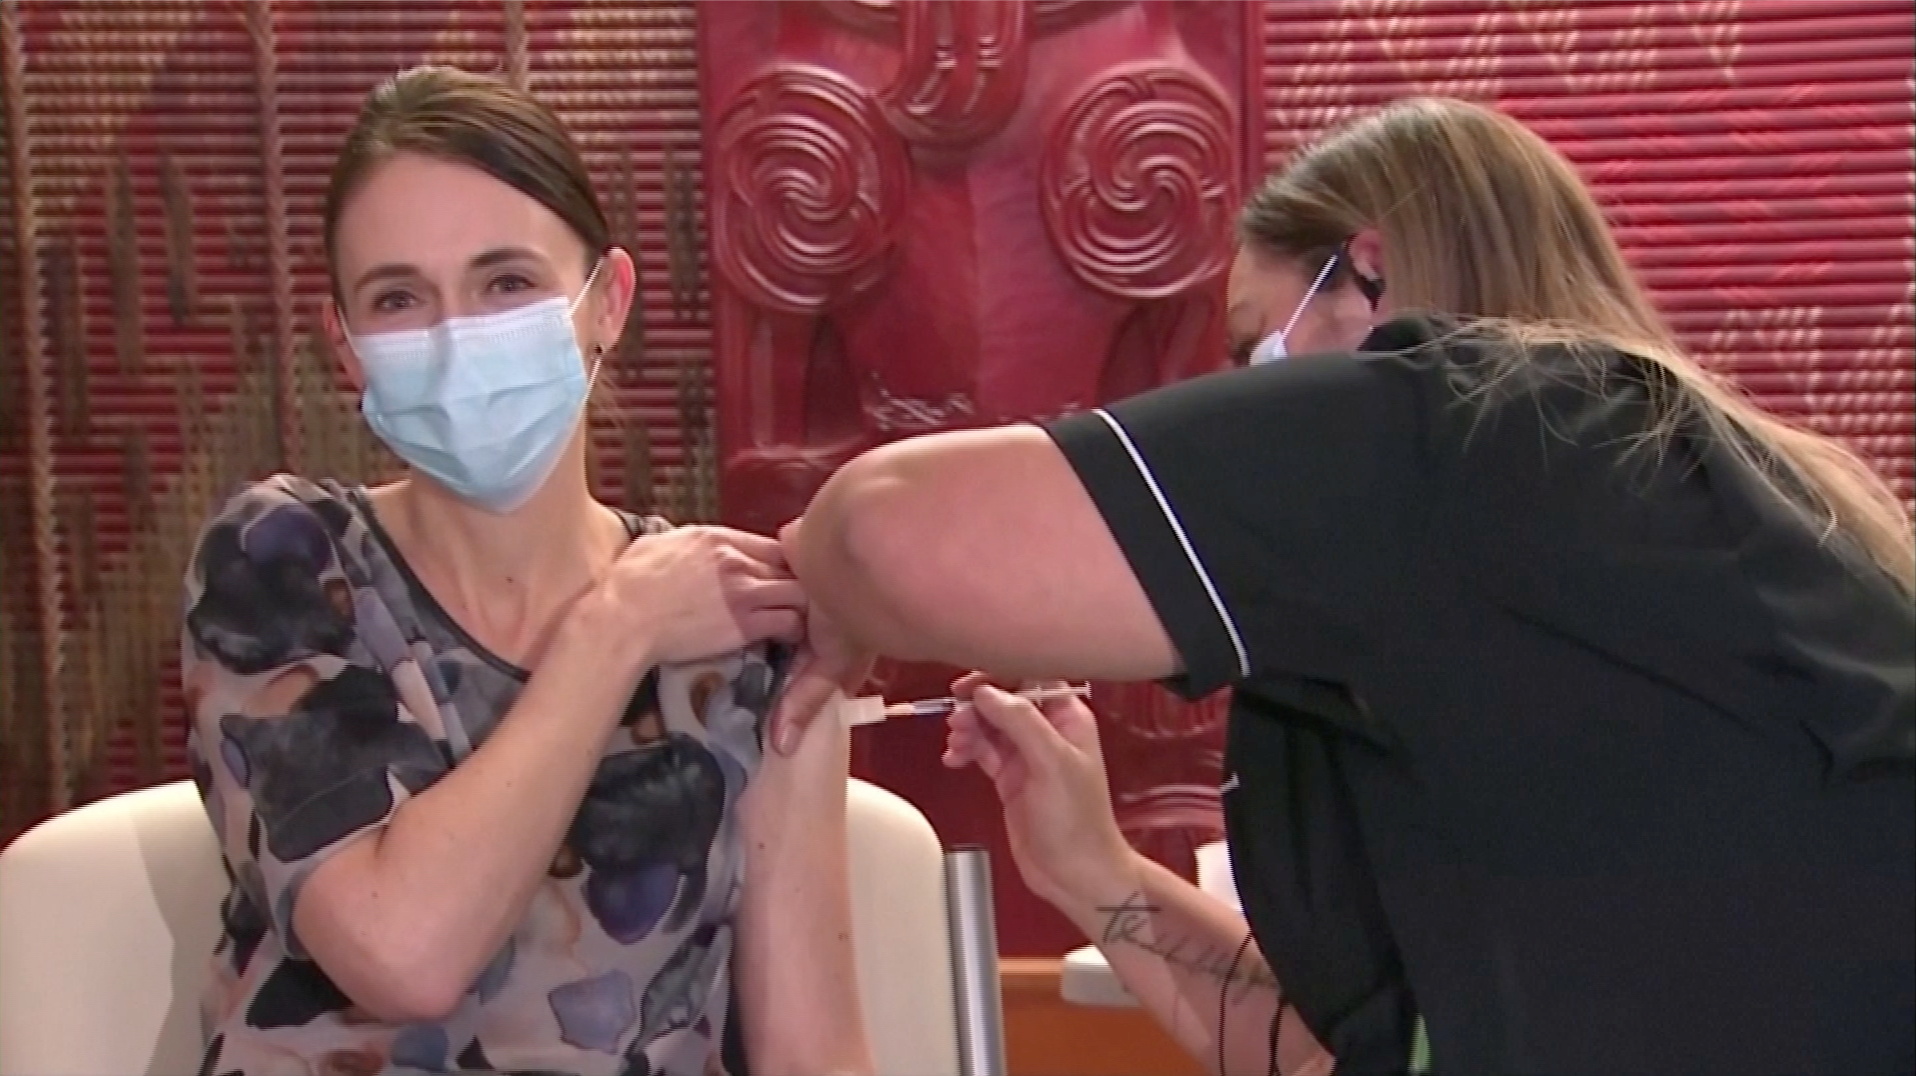 La primera ministra de Nueva Zelanda, Jacinda Ardern, recibe la primera dosis de la vacuna contra el coronavirus en Auckland, Nueva Zelanda, el 18 de junio de 2021. TVNZ / via REUTERS TV